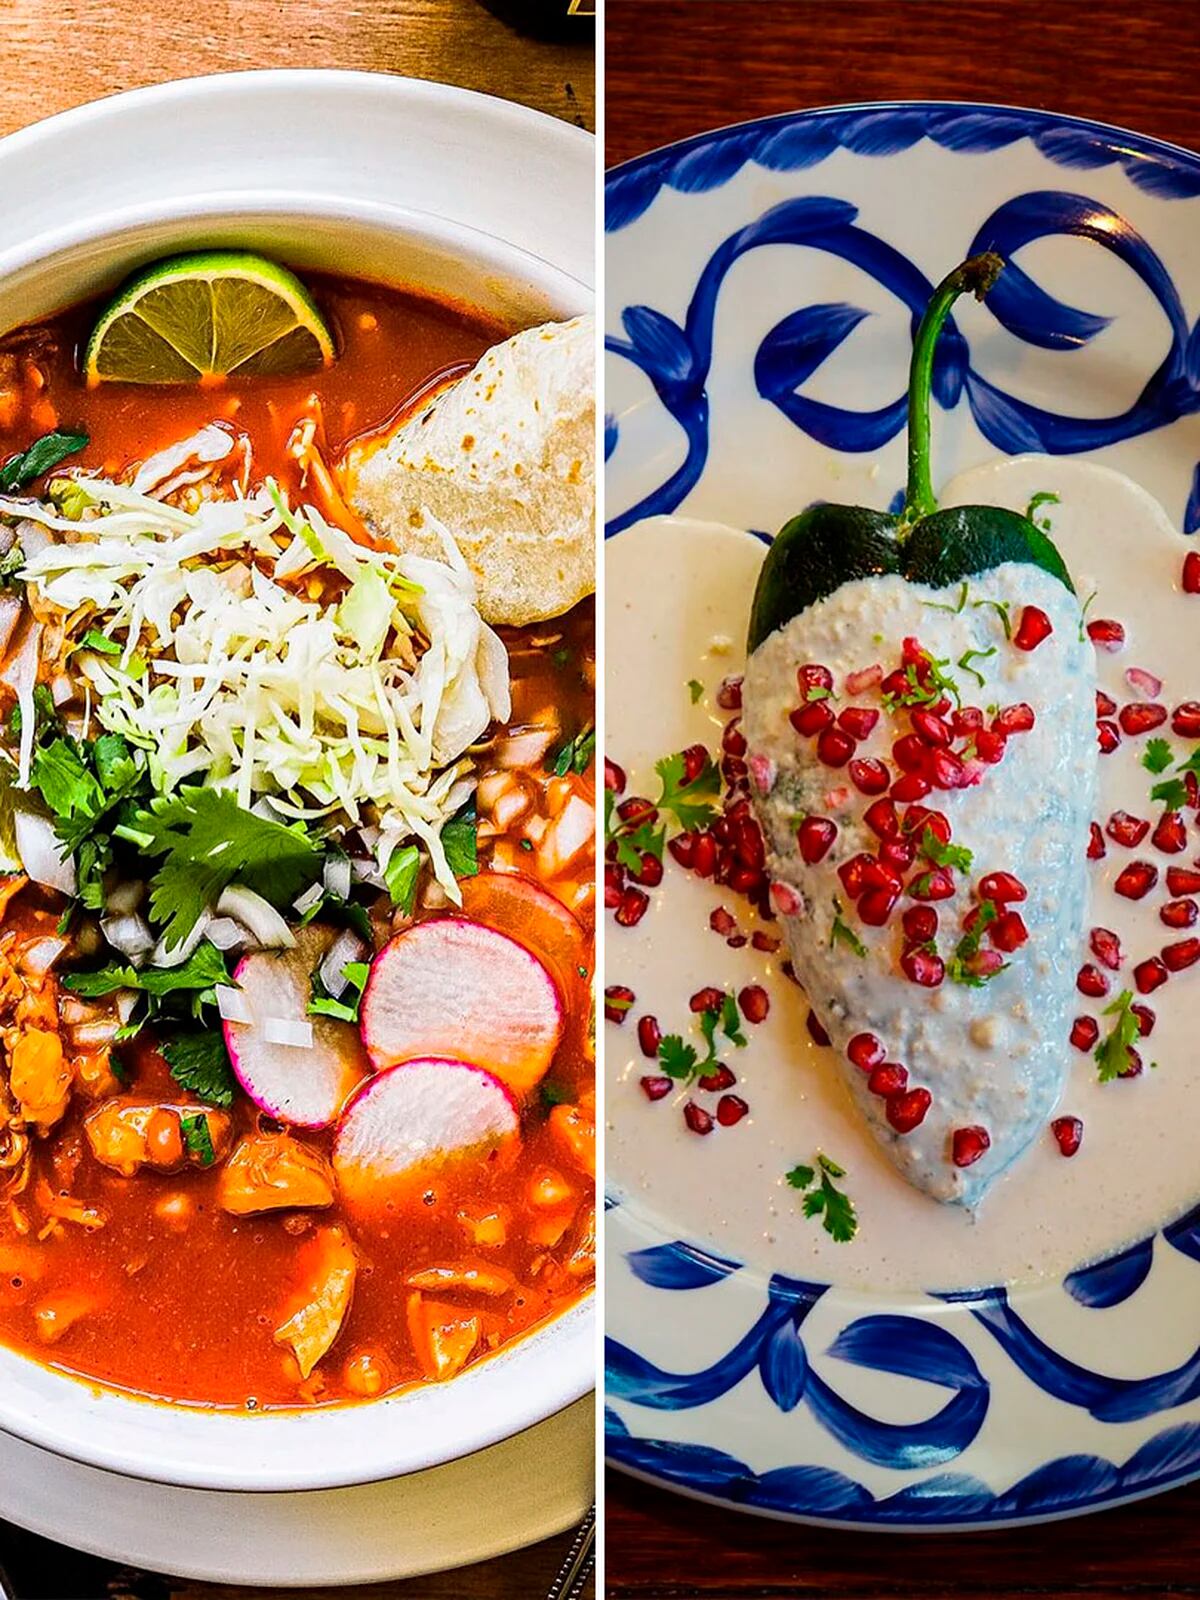 Parleremo di più degli aspetti succulenti del cibo messicano